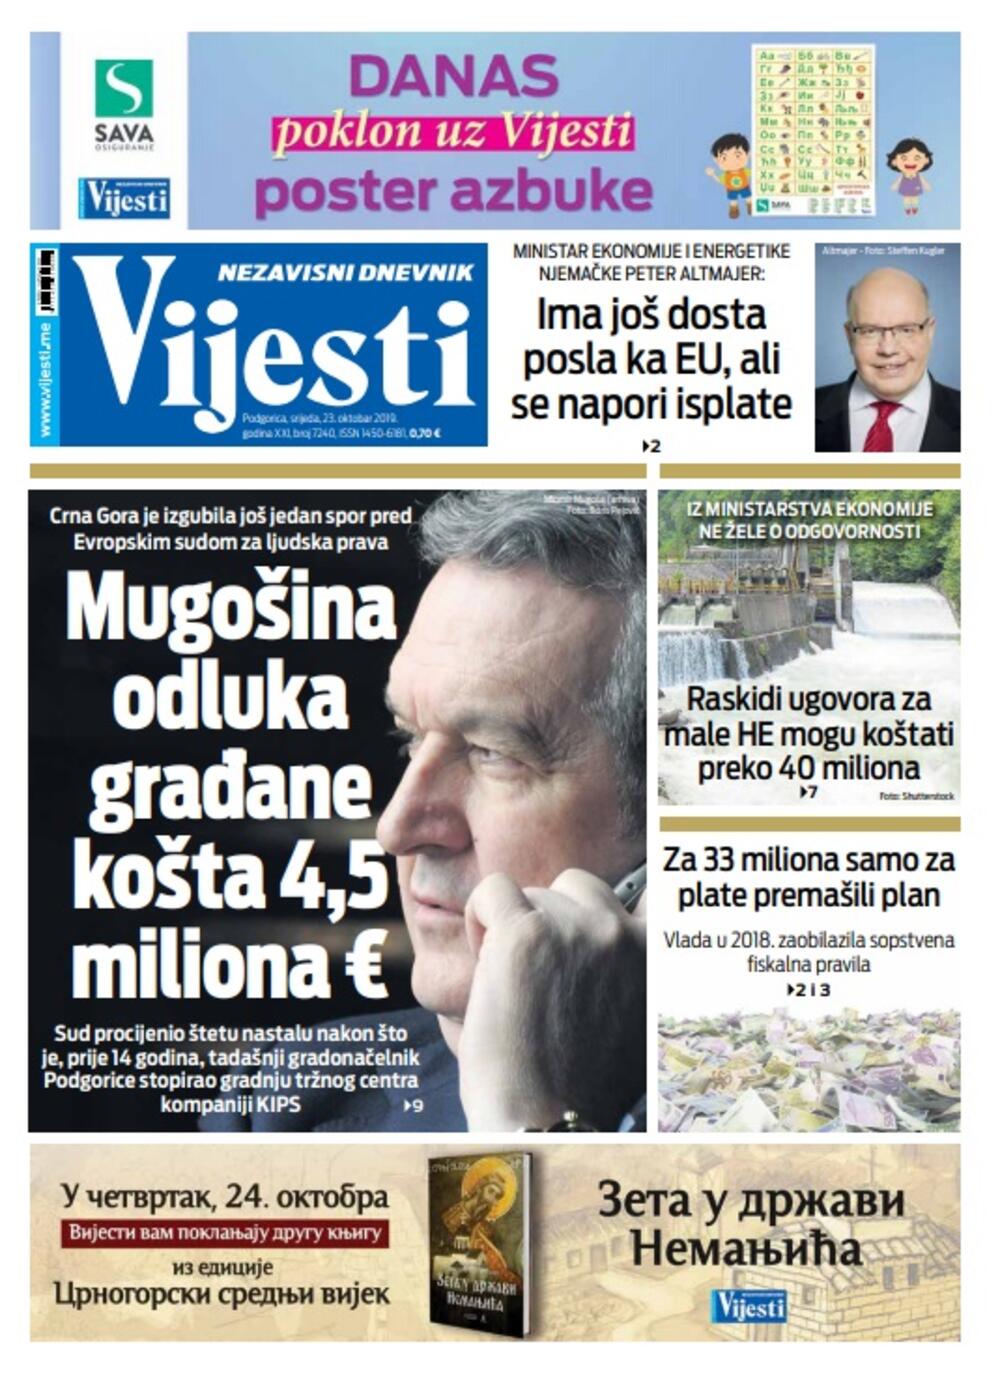 Naslovna strana "Vijesti" za 23. oktobar 2019., Foto: Vijesti